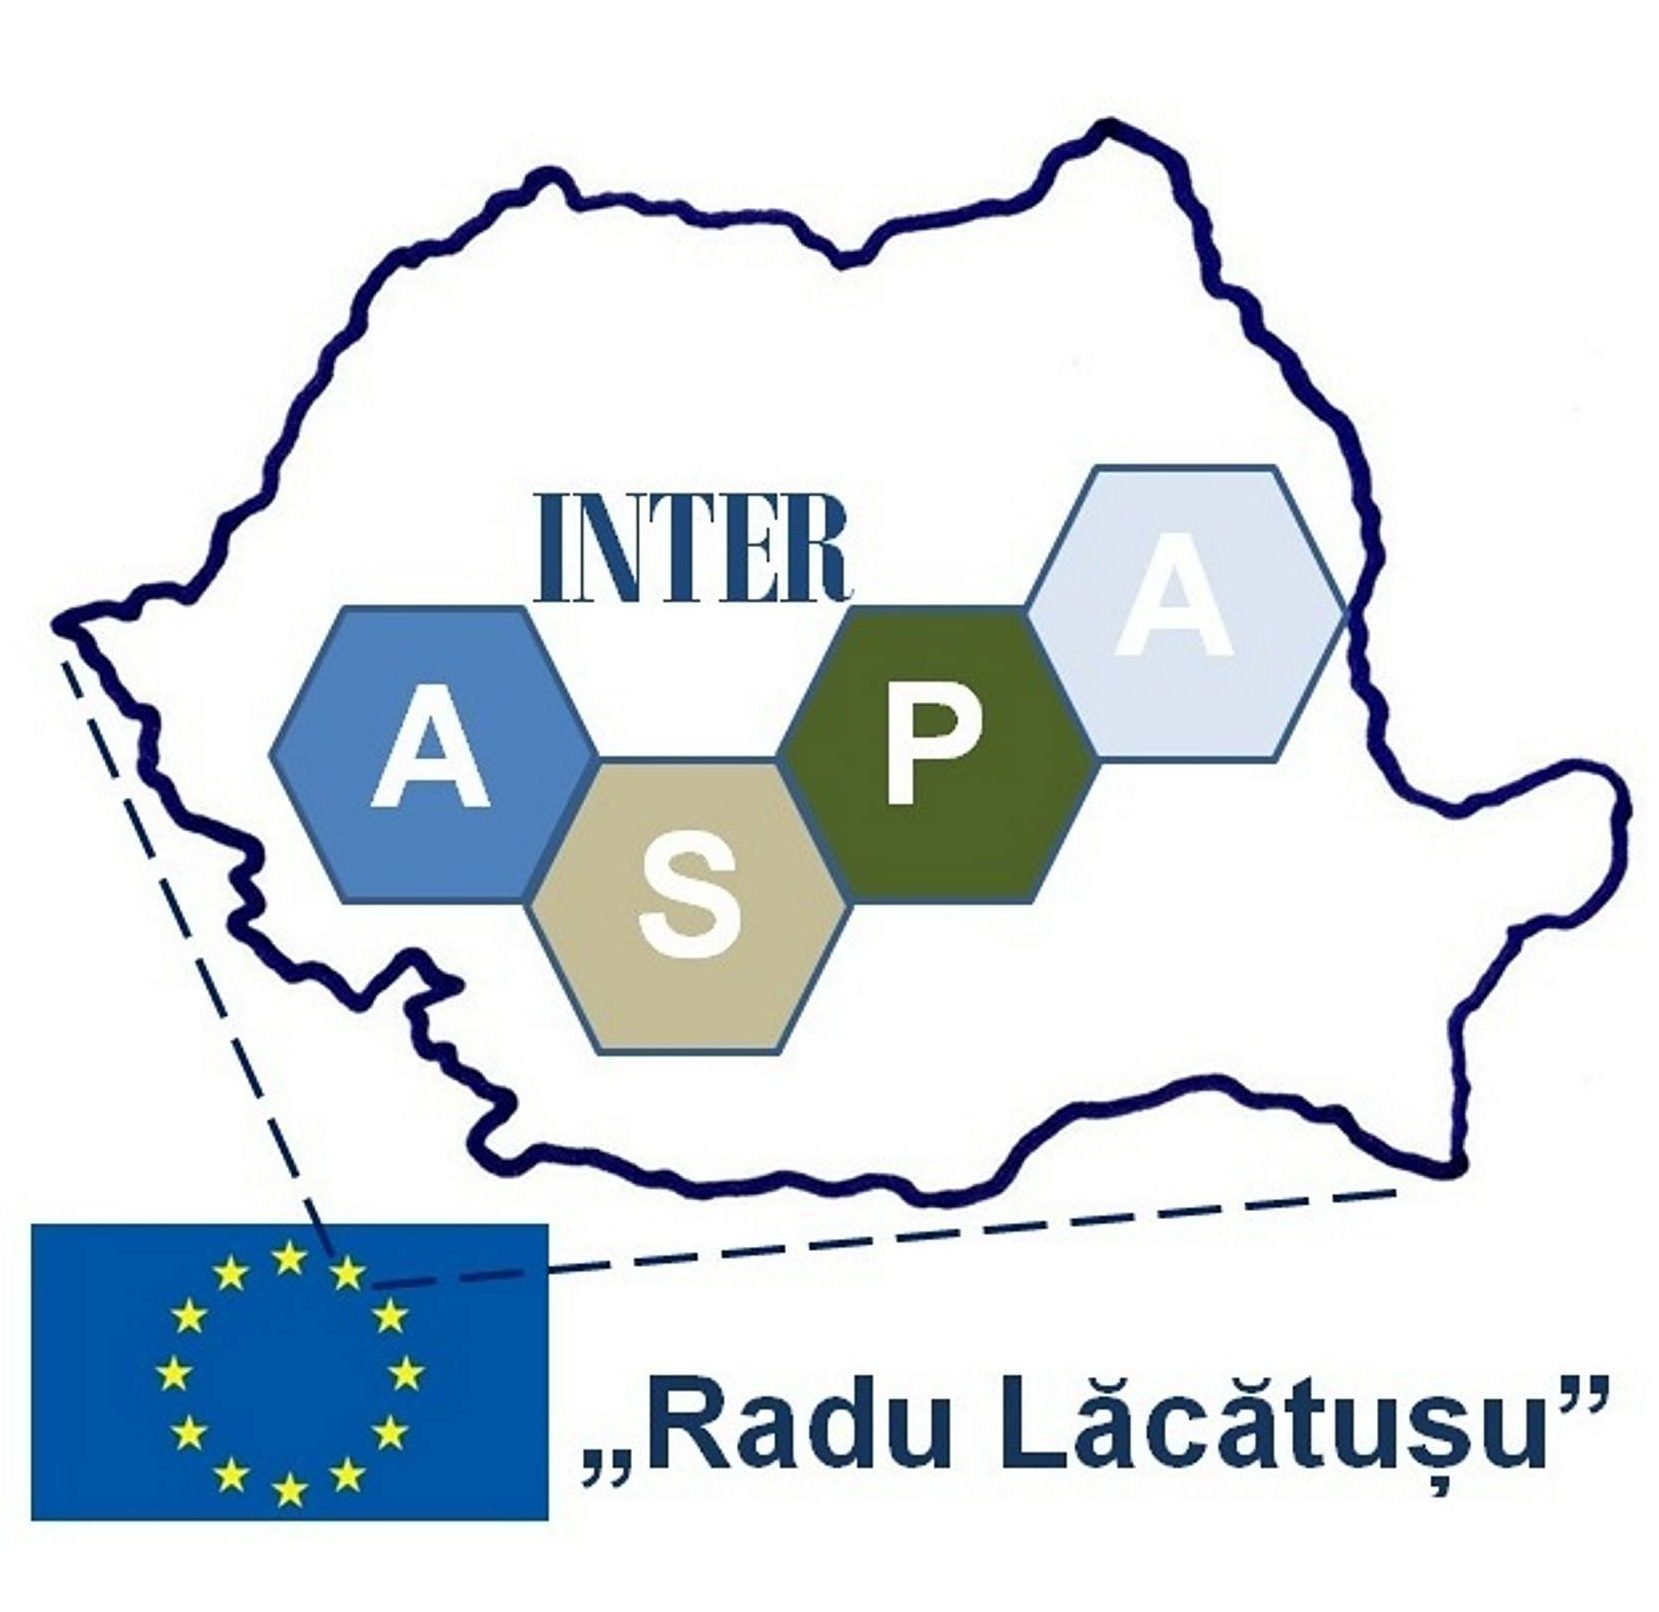 Inter-Aspa